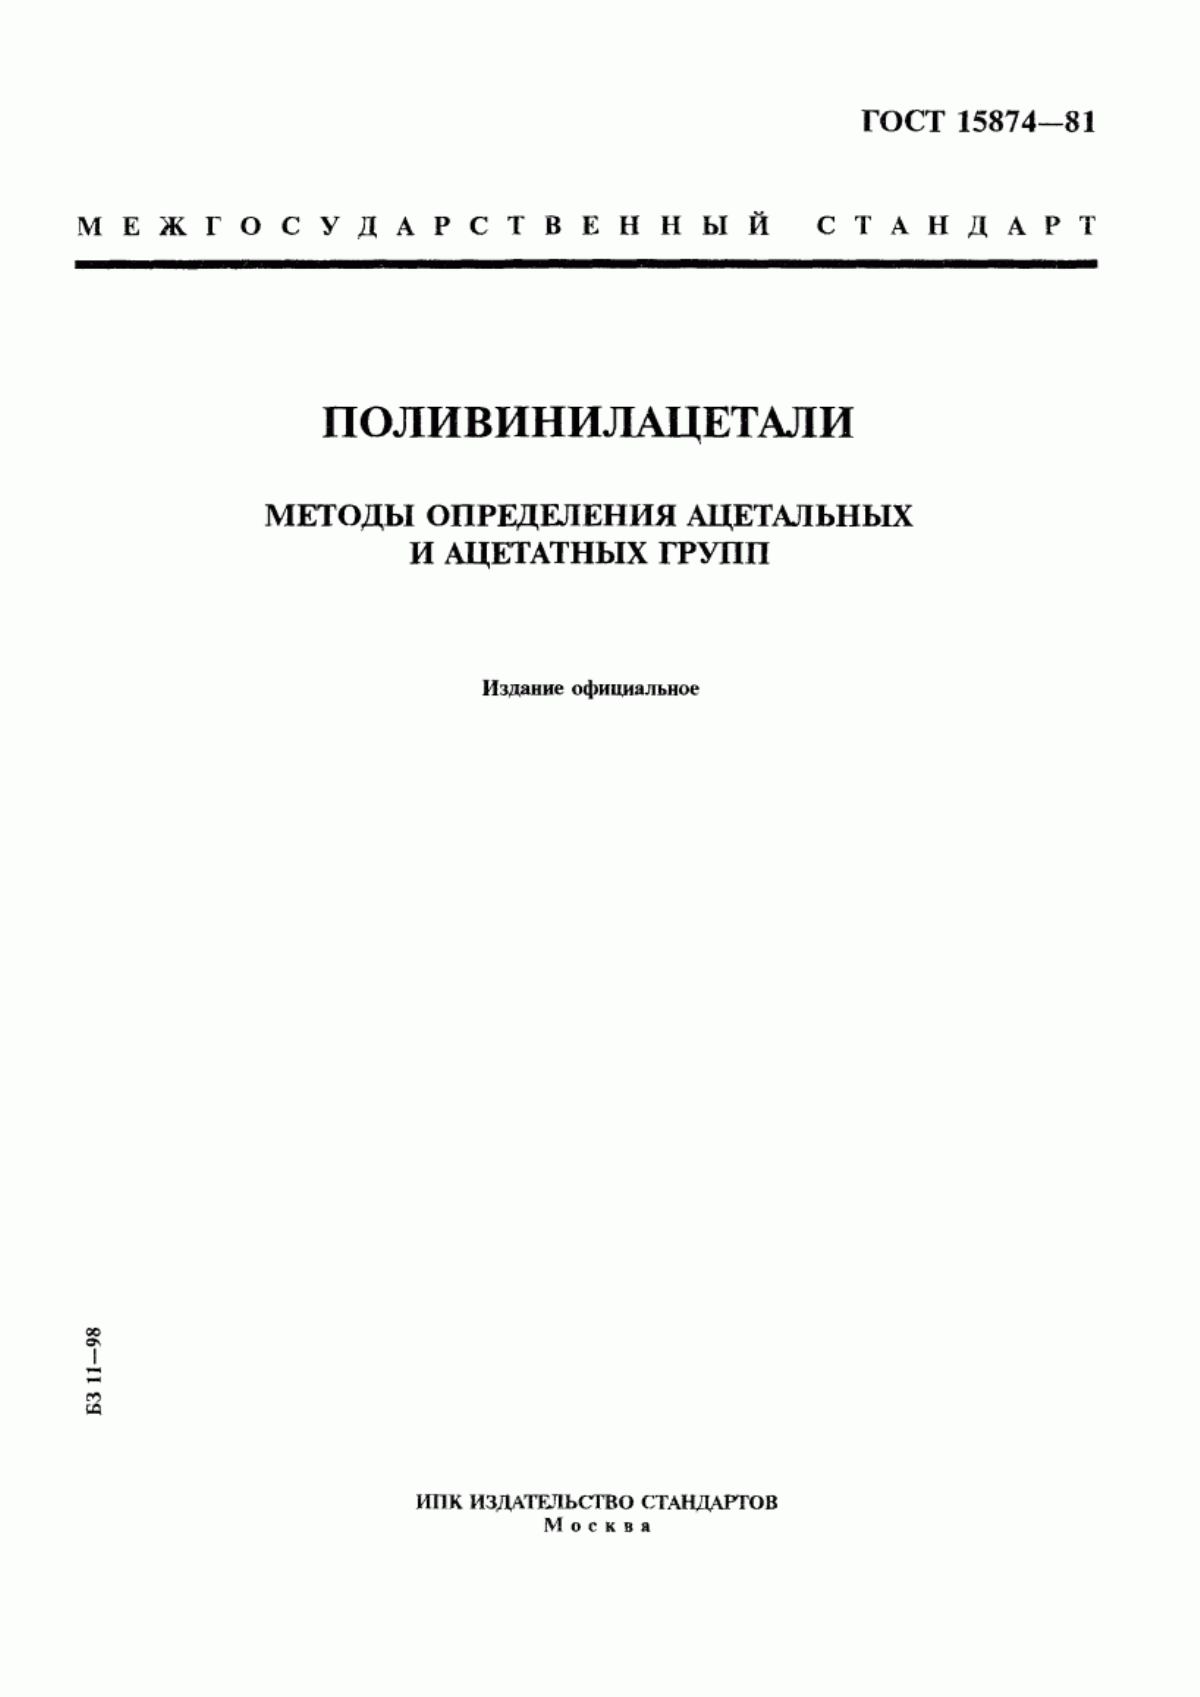 ГОСТ 15874-81 Поливинилацетали. Методы определения ацетальных и ацетатных групп